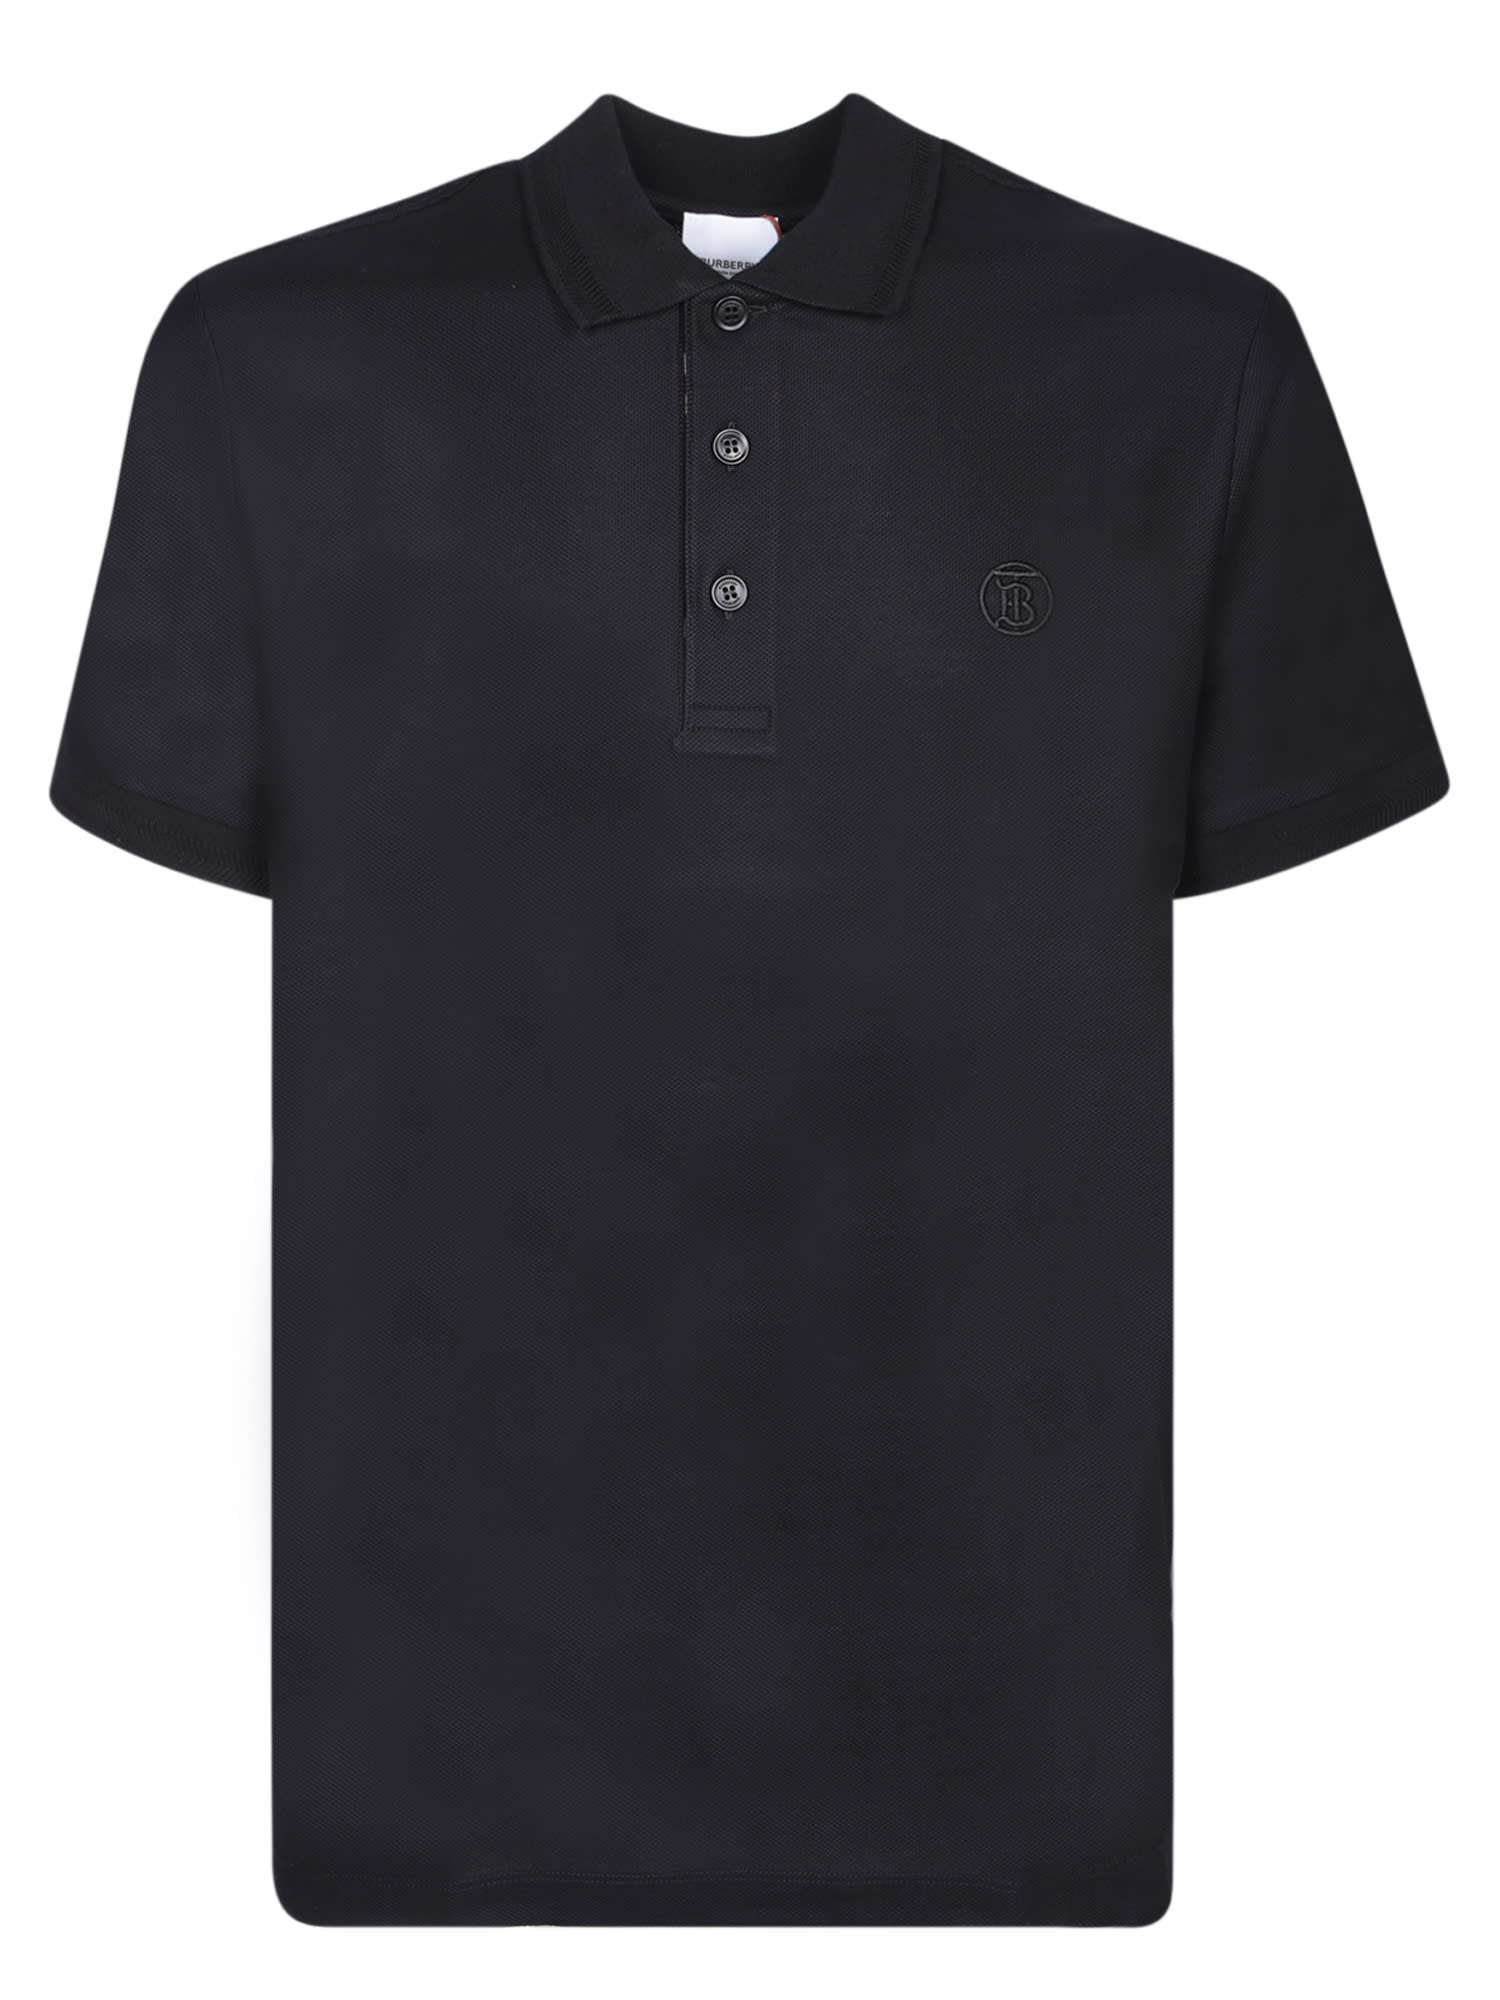 Eddie Tb Black Polo Shirt